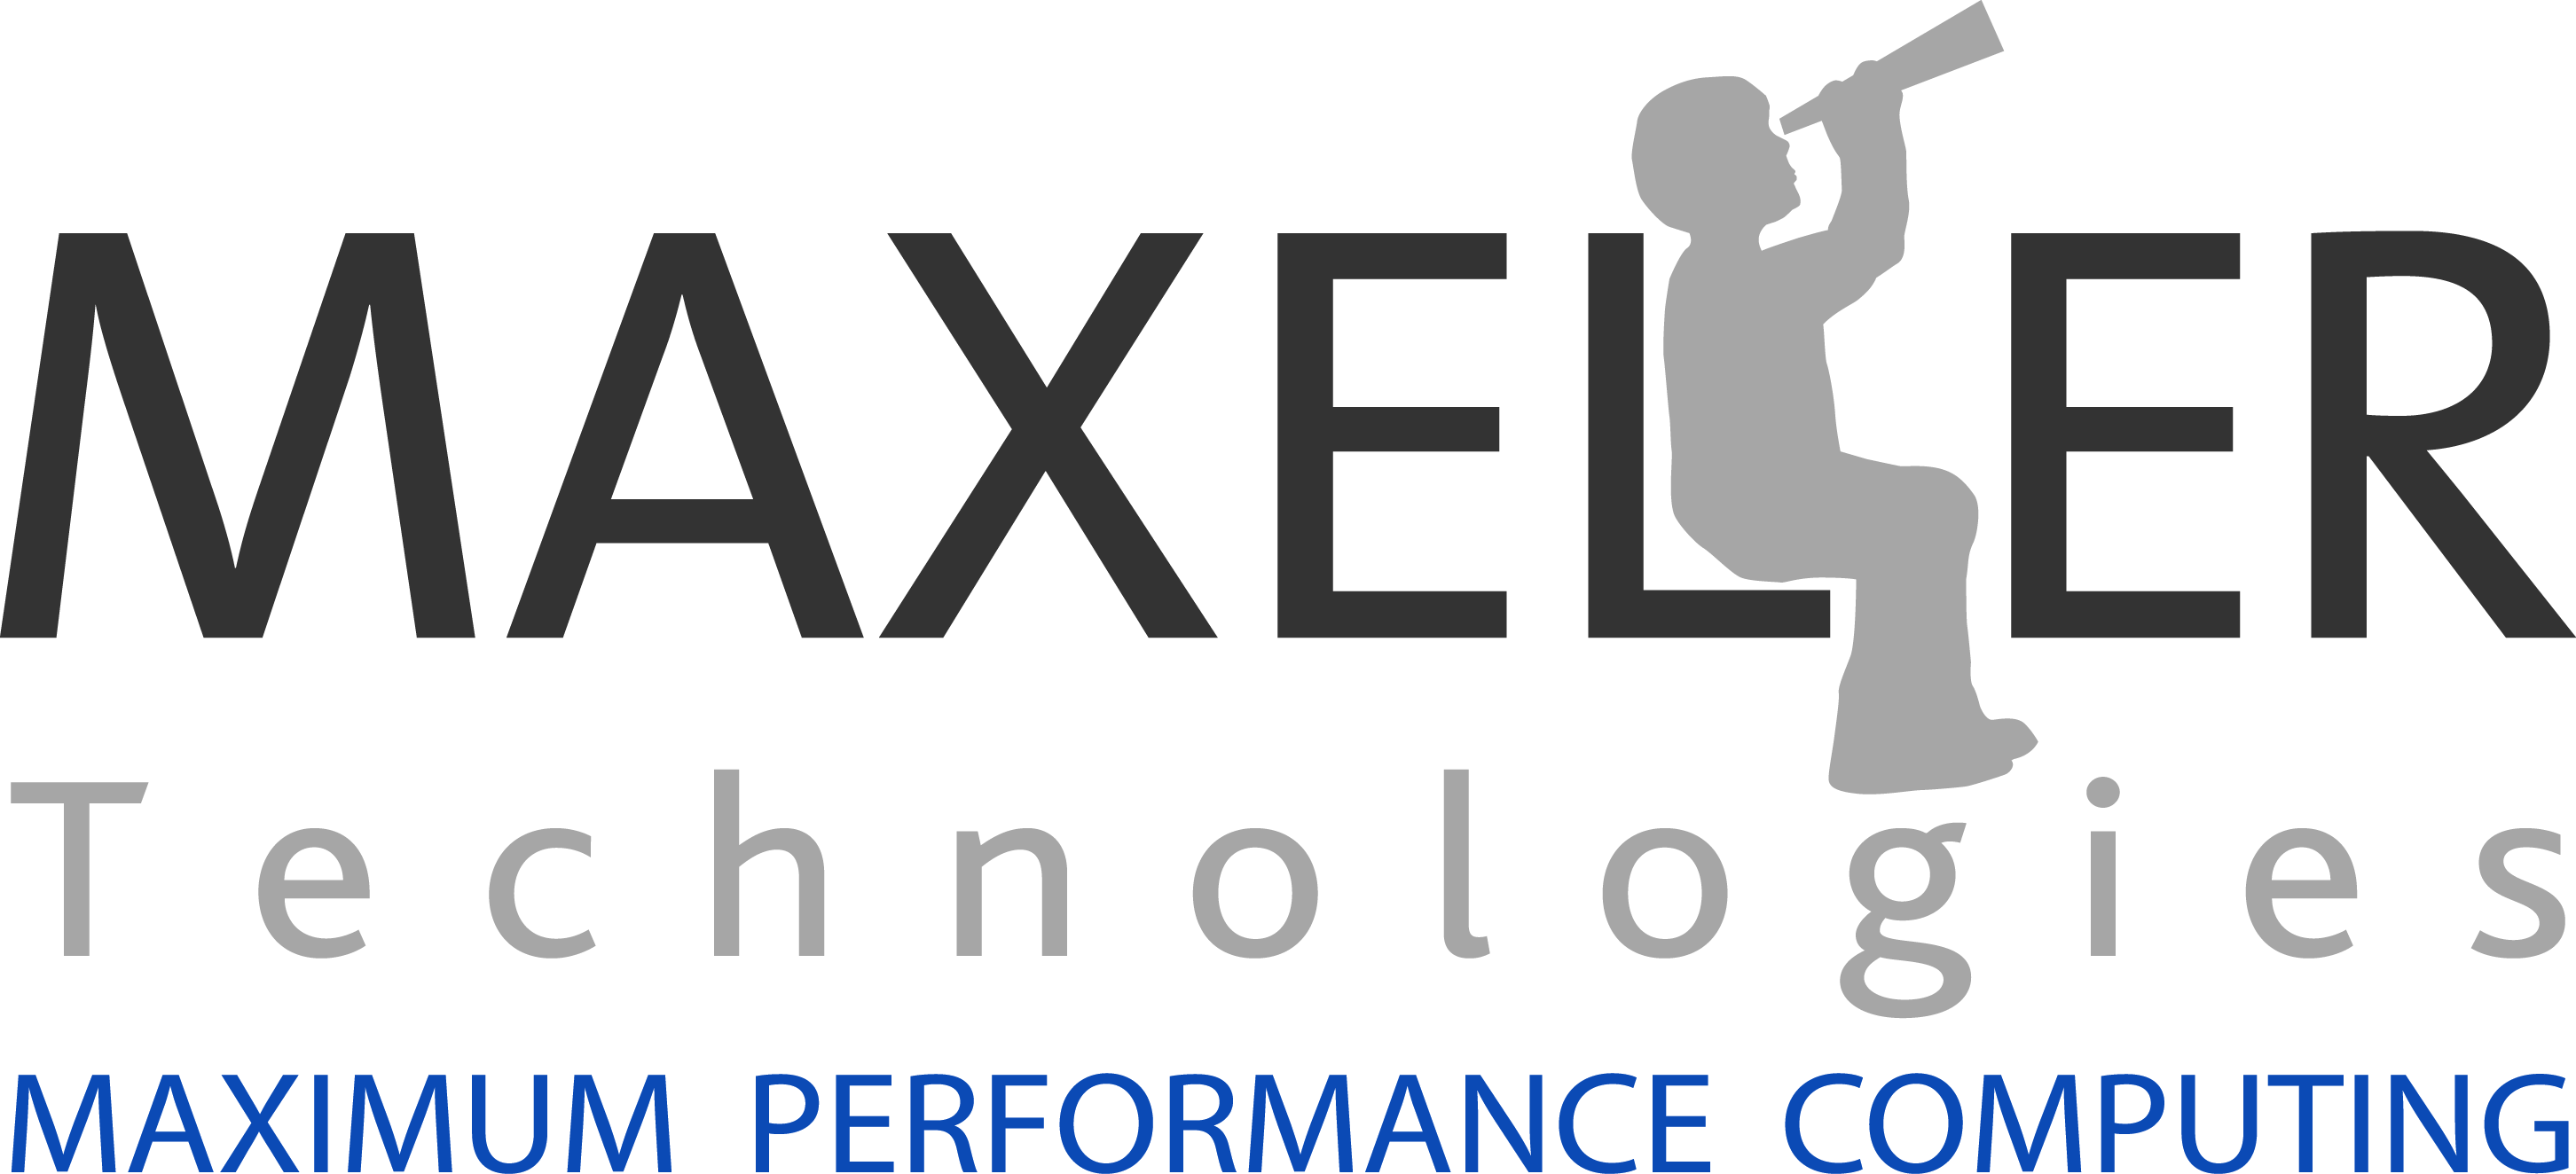 Maxeler Technologies